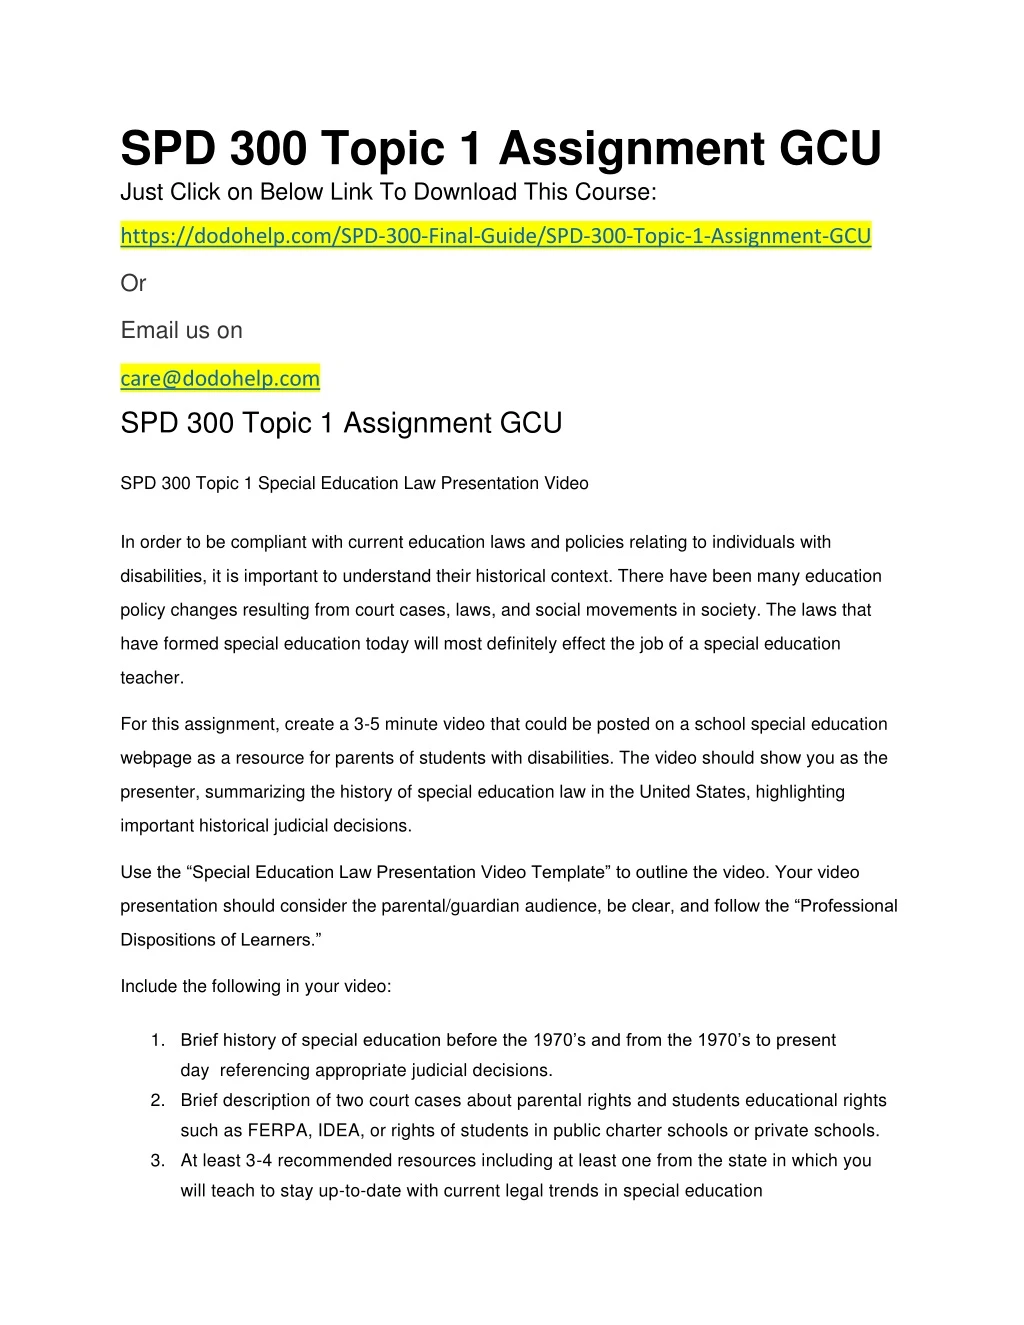 spd 300 topic 1 assignment gcu just click